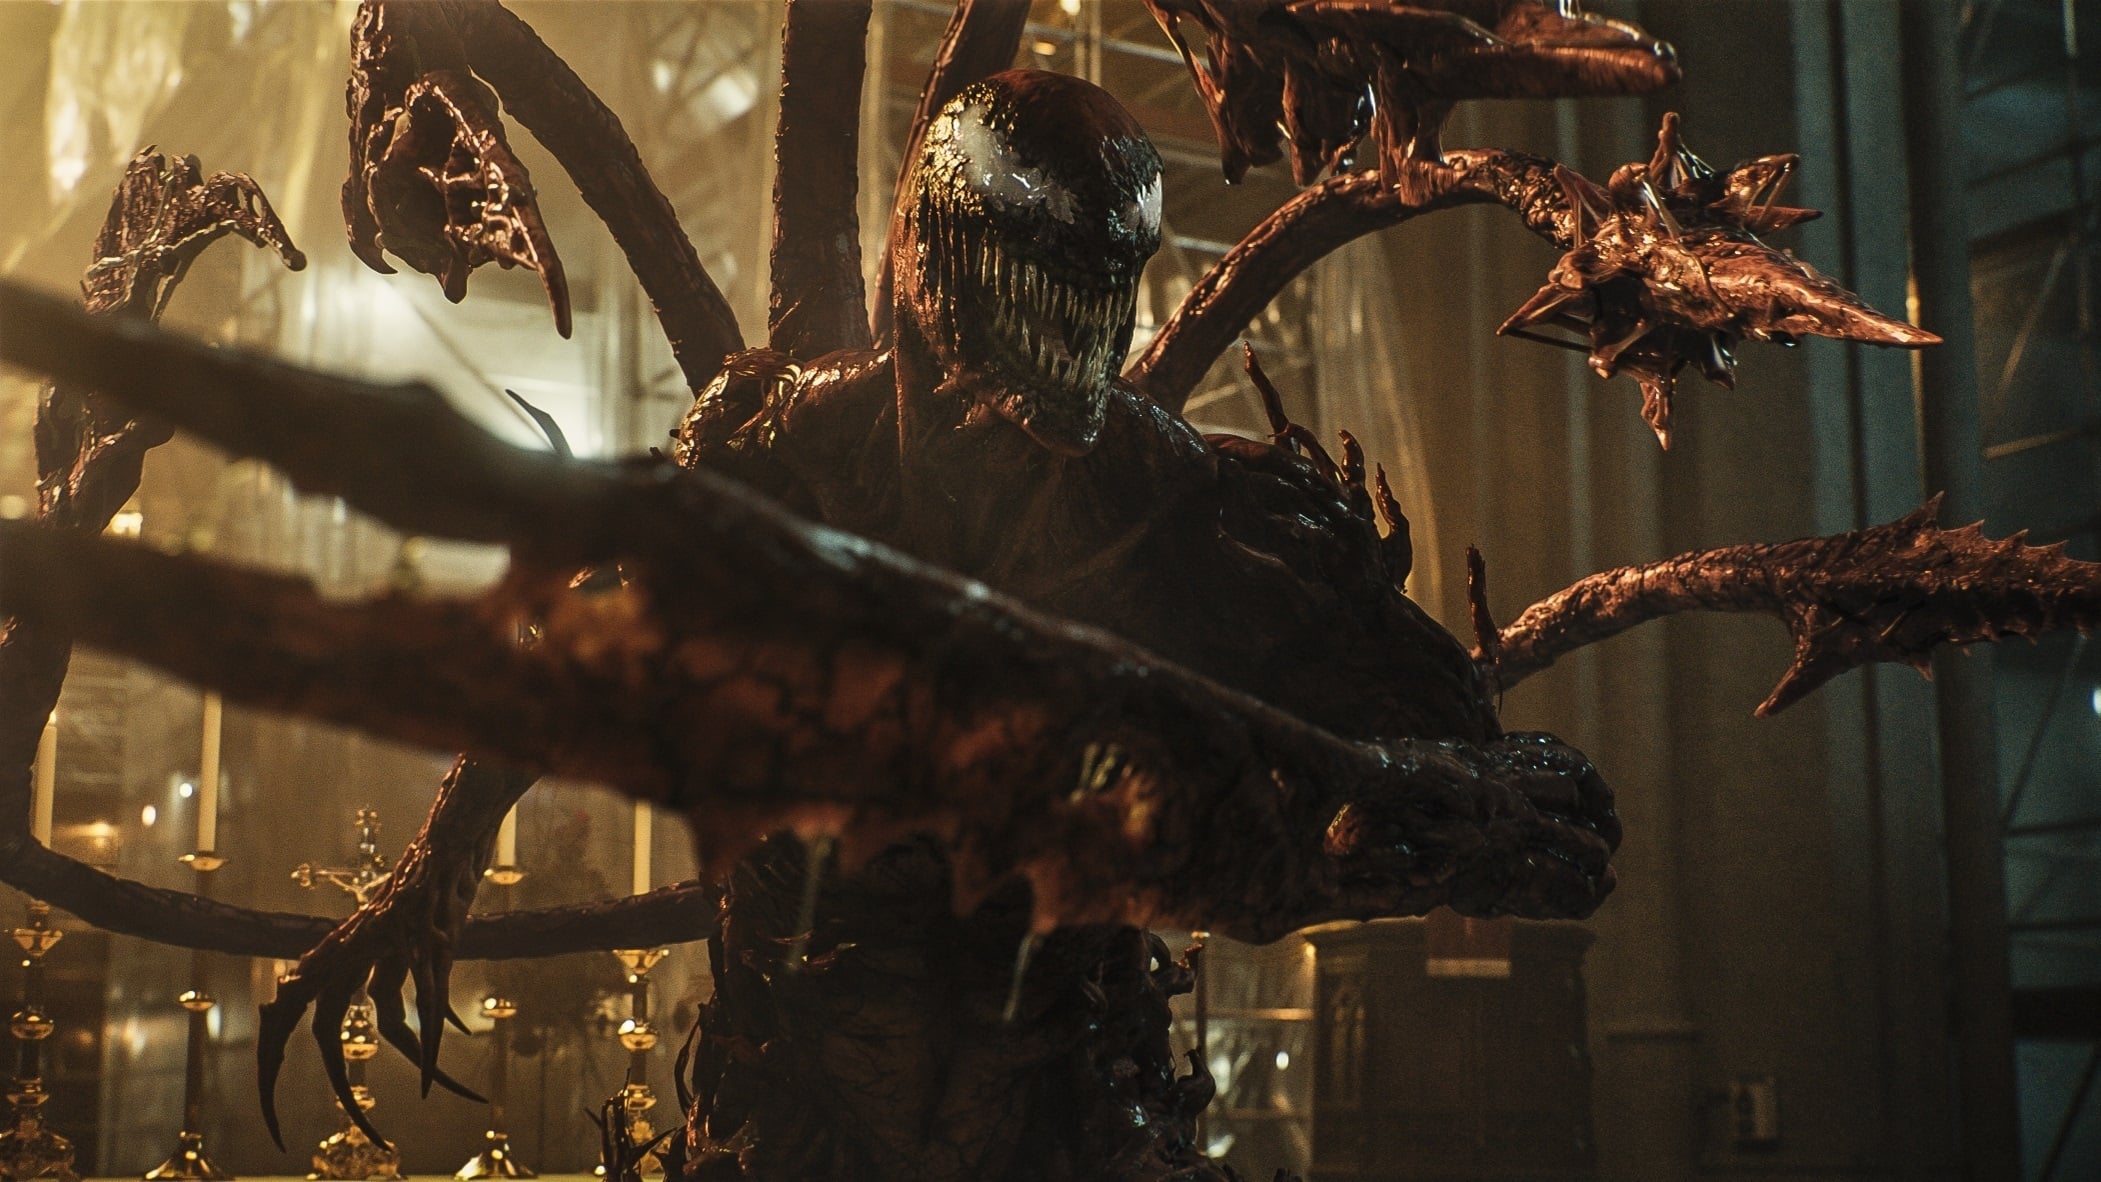 เวน่อม ศึกอสูรแดงเดือด Venom: Let There Be Carnage ออนไลน์โดยสมบูรณ์ในปี 2021